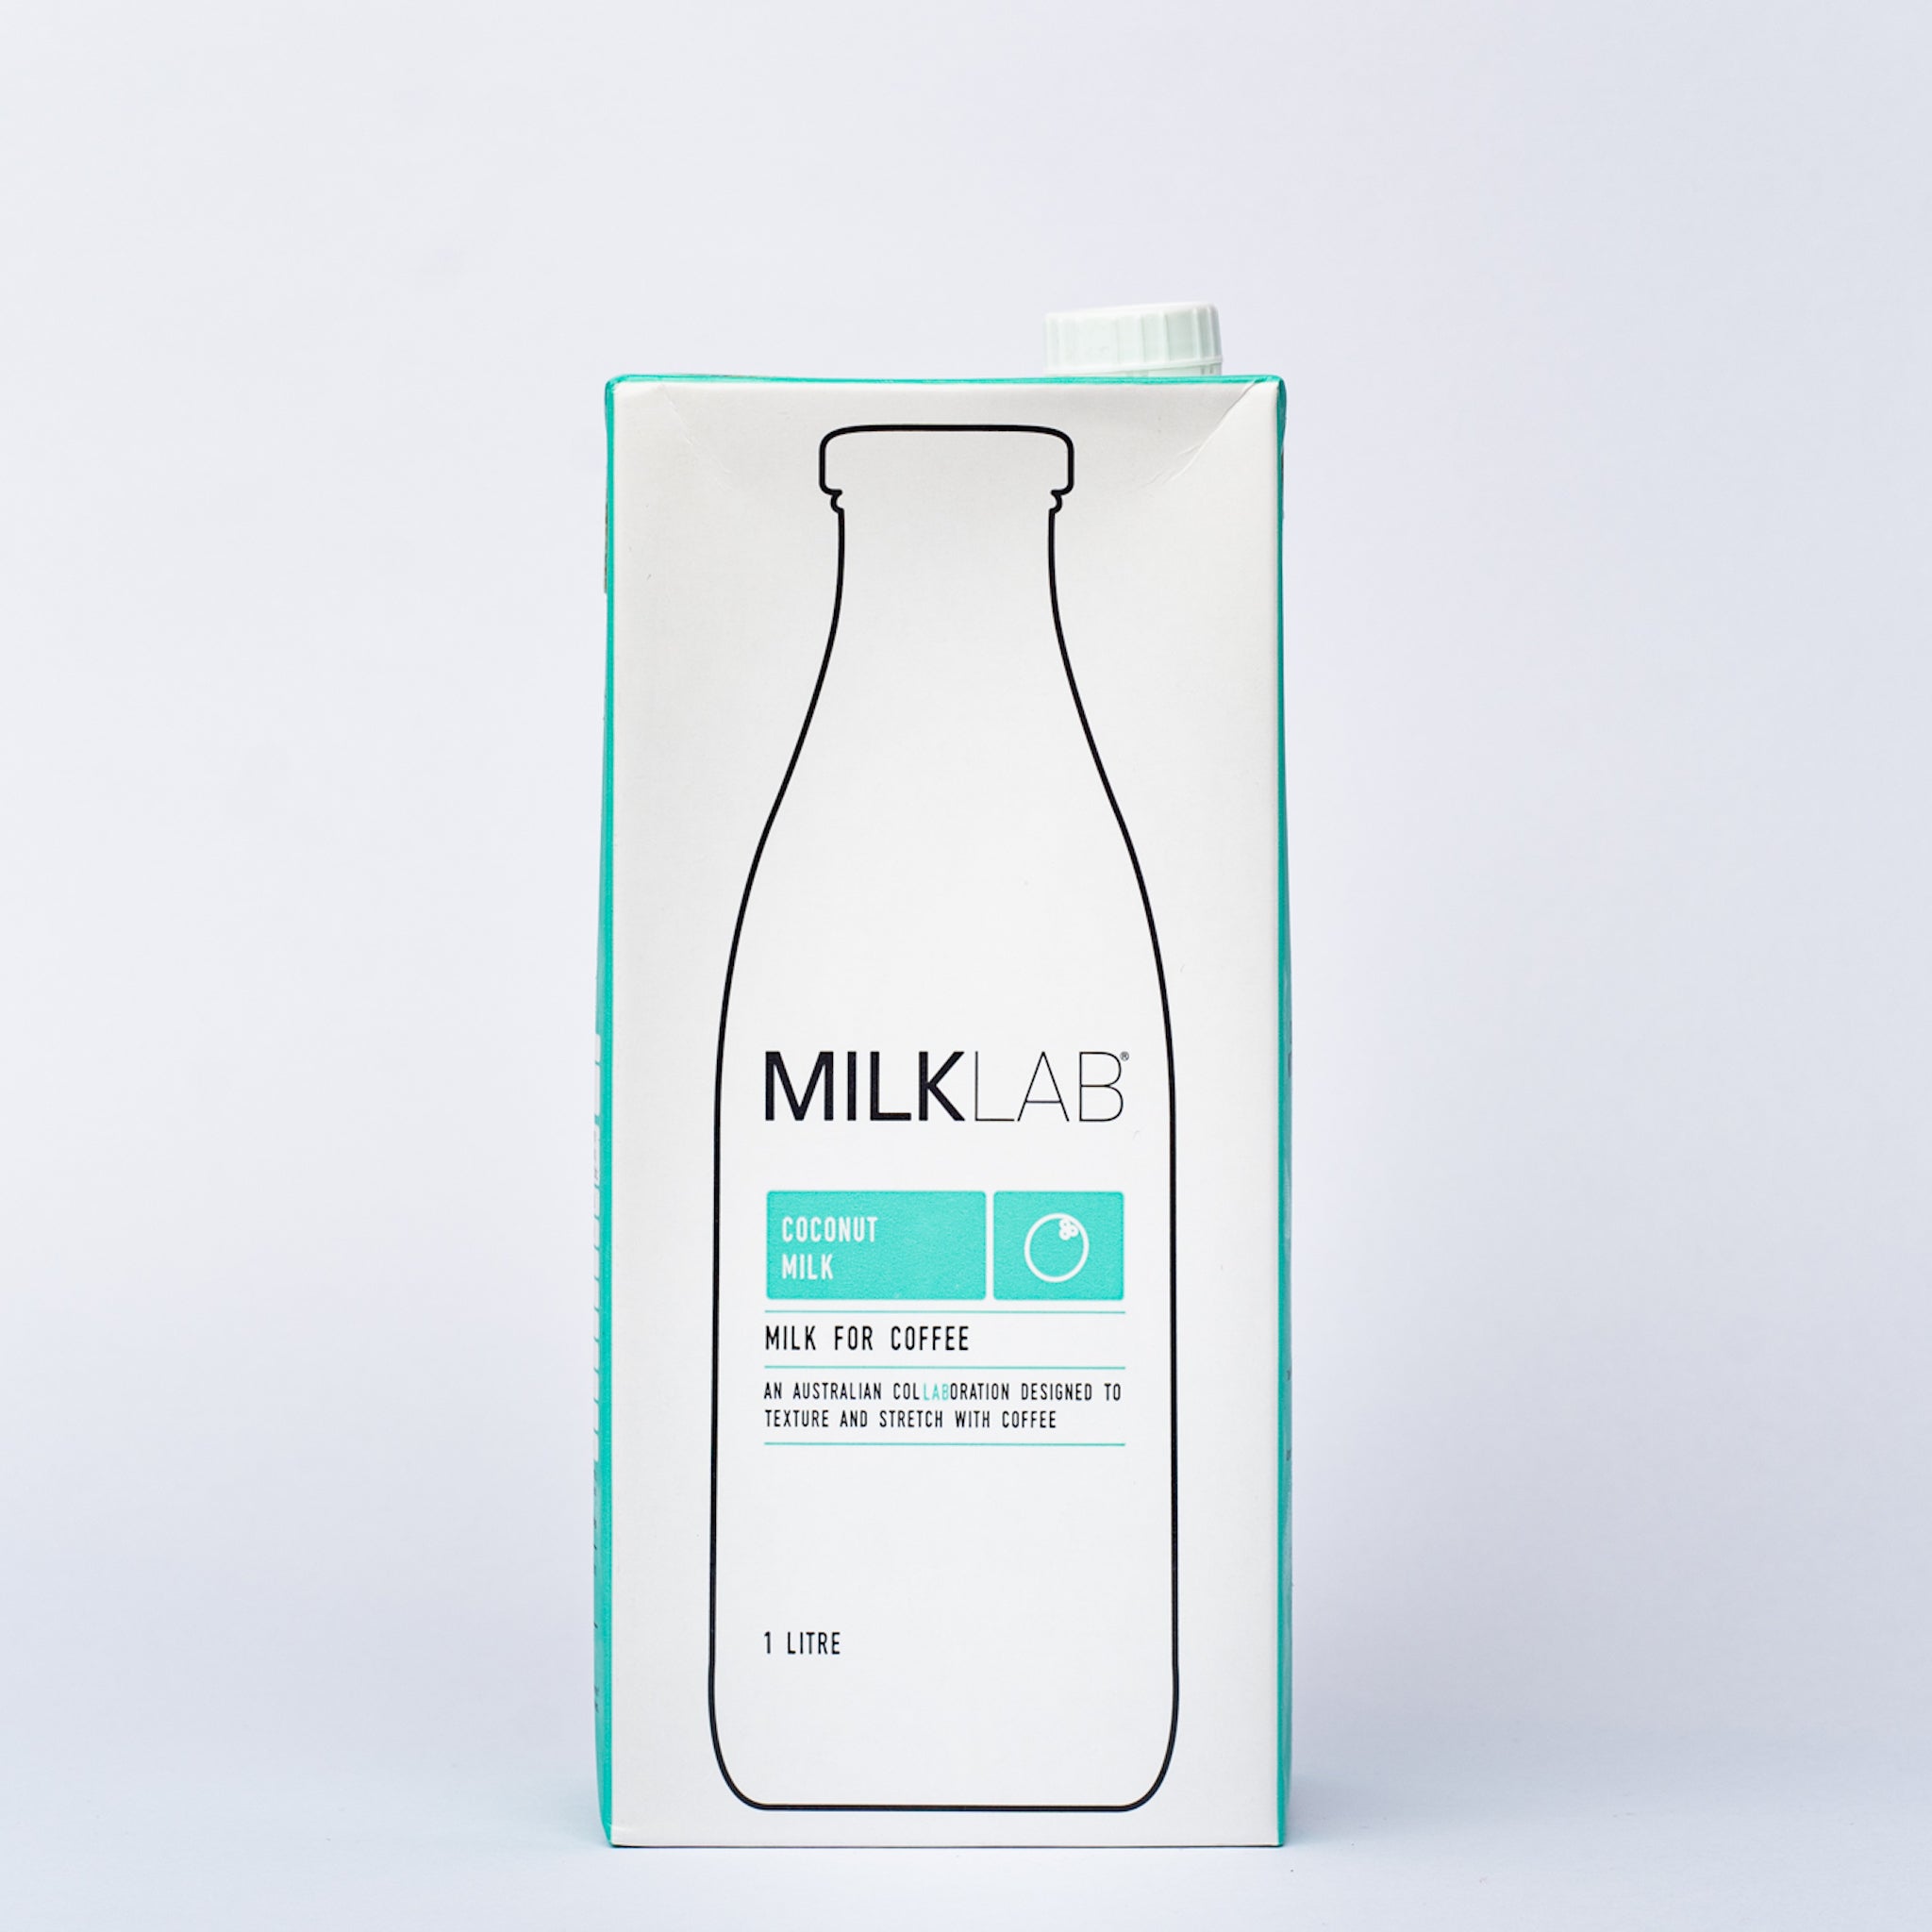 A 1L tetra pack of Milk Lab Coconut Milk.